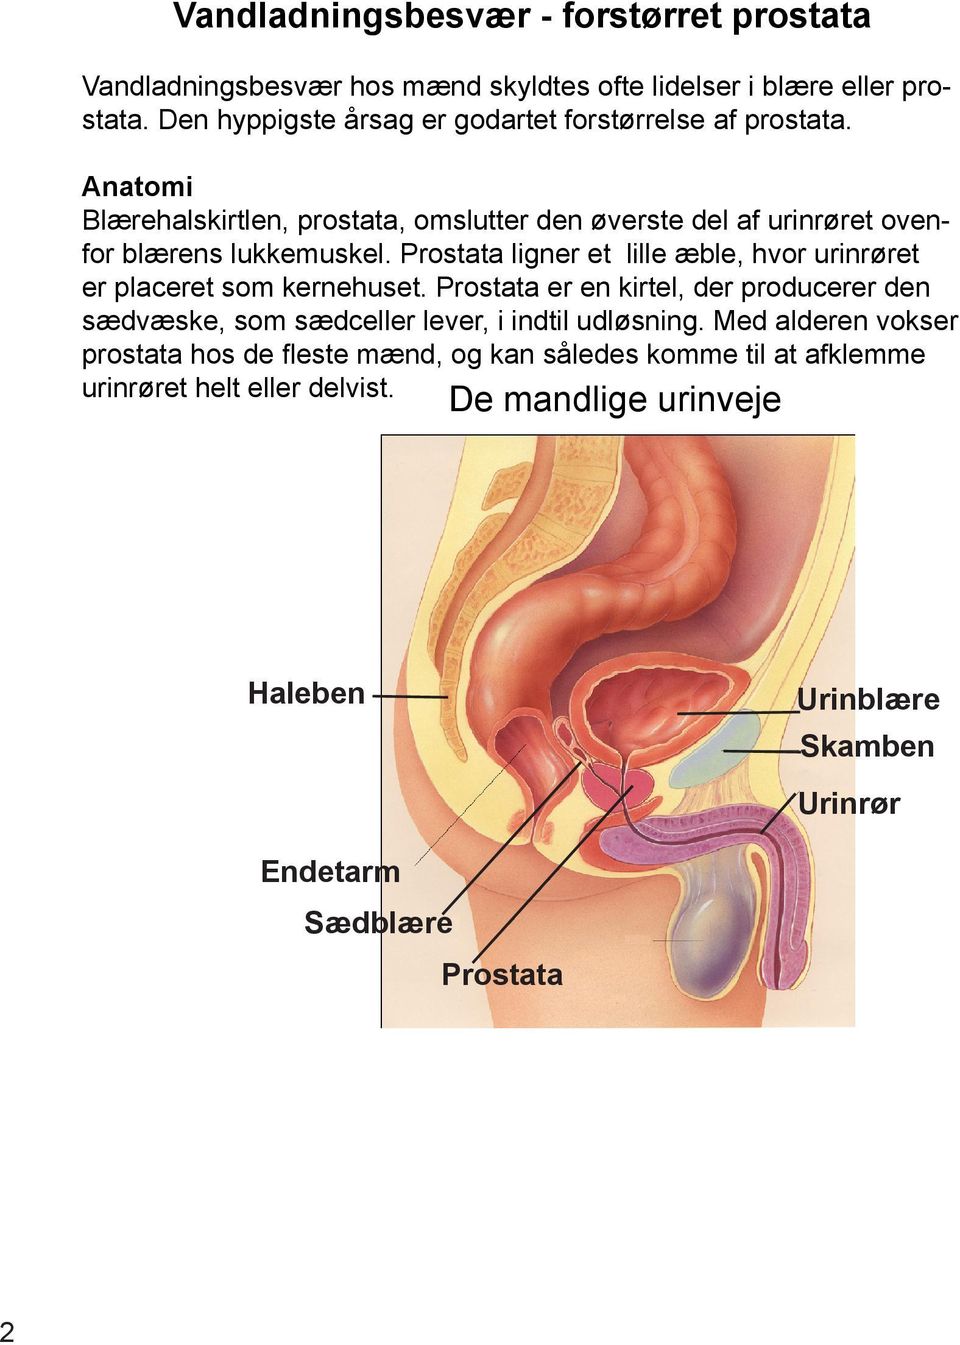 Vandladningsbesvær Forstørret prostata - PDF Gratis download